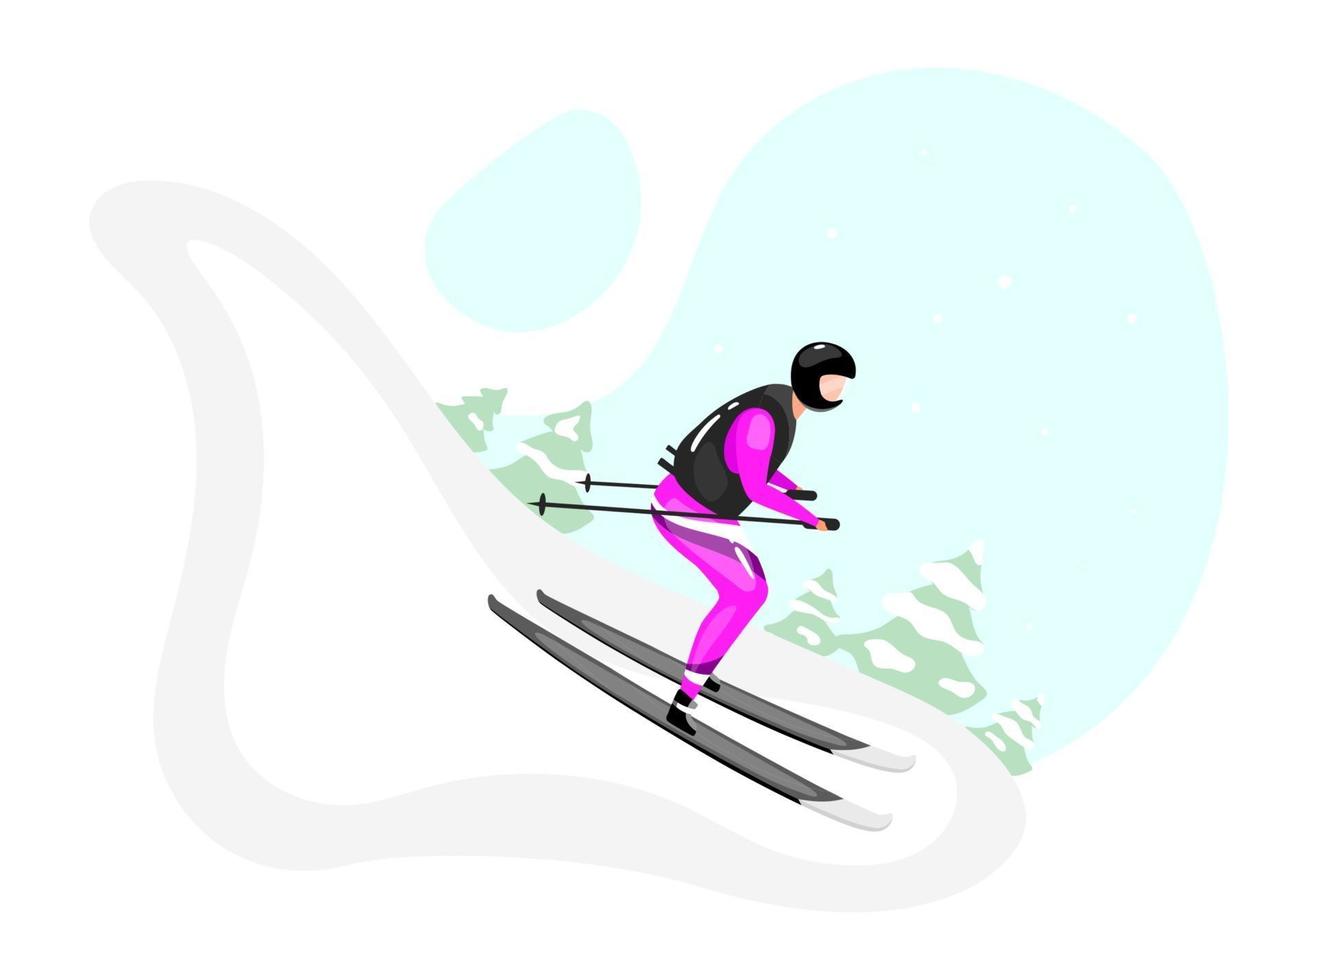 Abfahrtsski flache Vektorgrafiken. extremer Wintersport. aktiver Lebensstil. Outdoor-Aktivitäten am verschneiten Berghang. Sportler auf Skiern isolierte Zeichentrickfigur auf blauem Hintergrund vektor